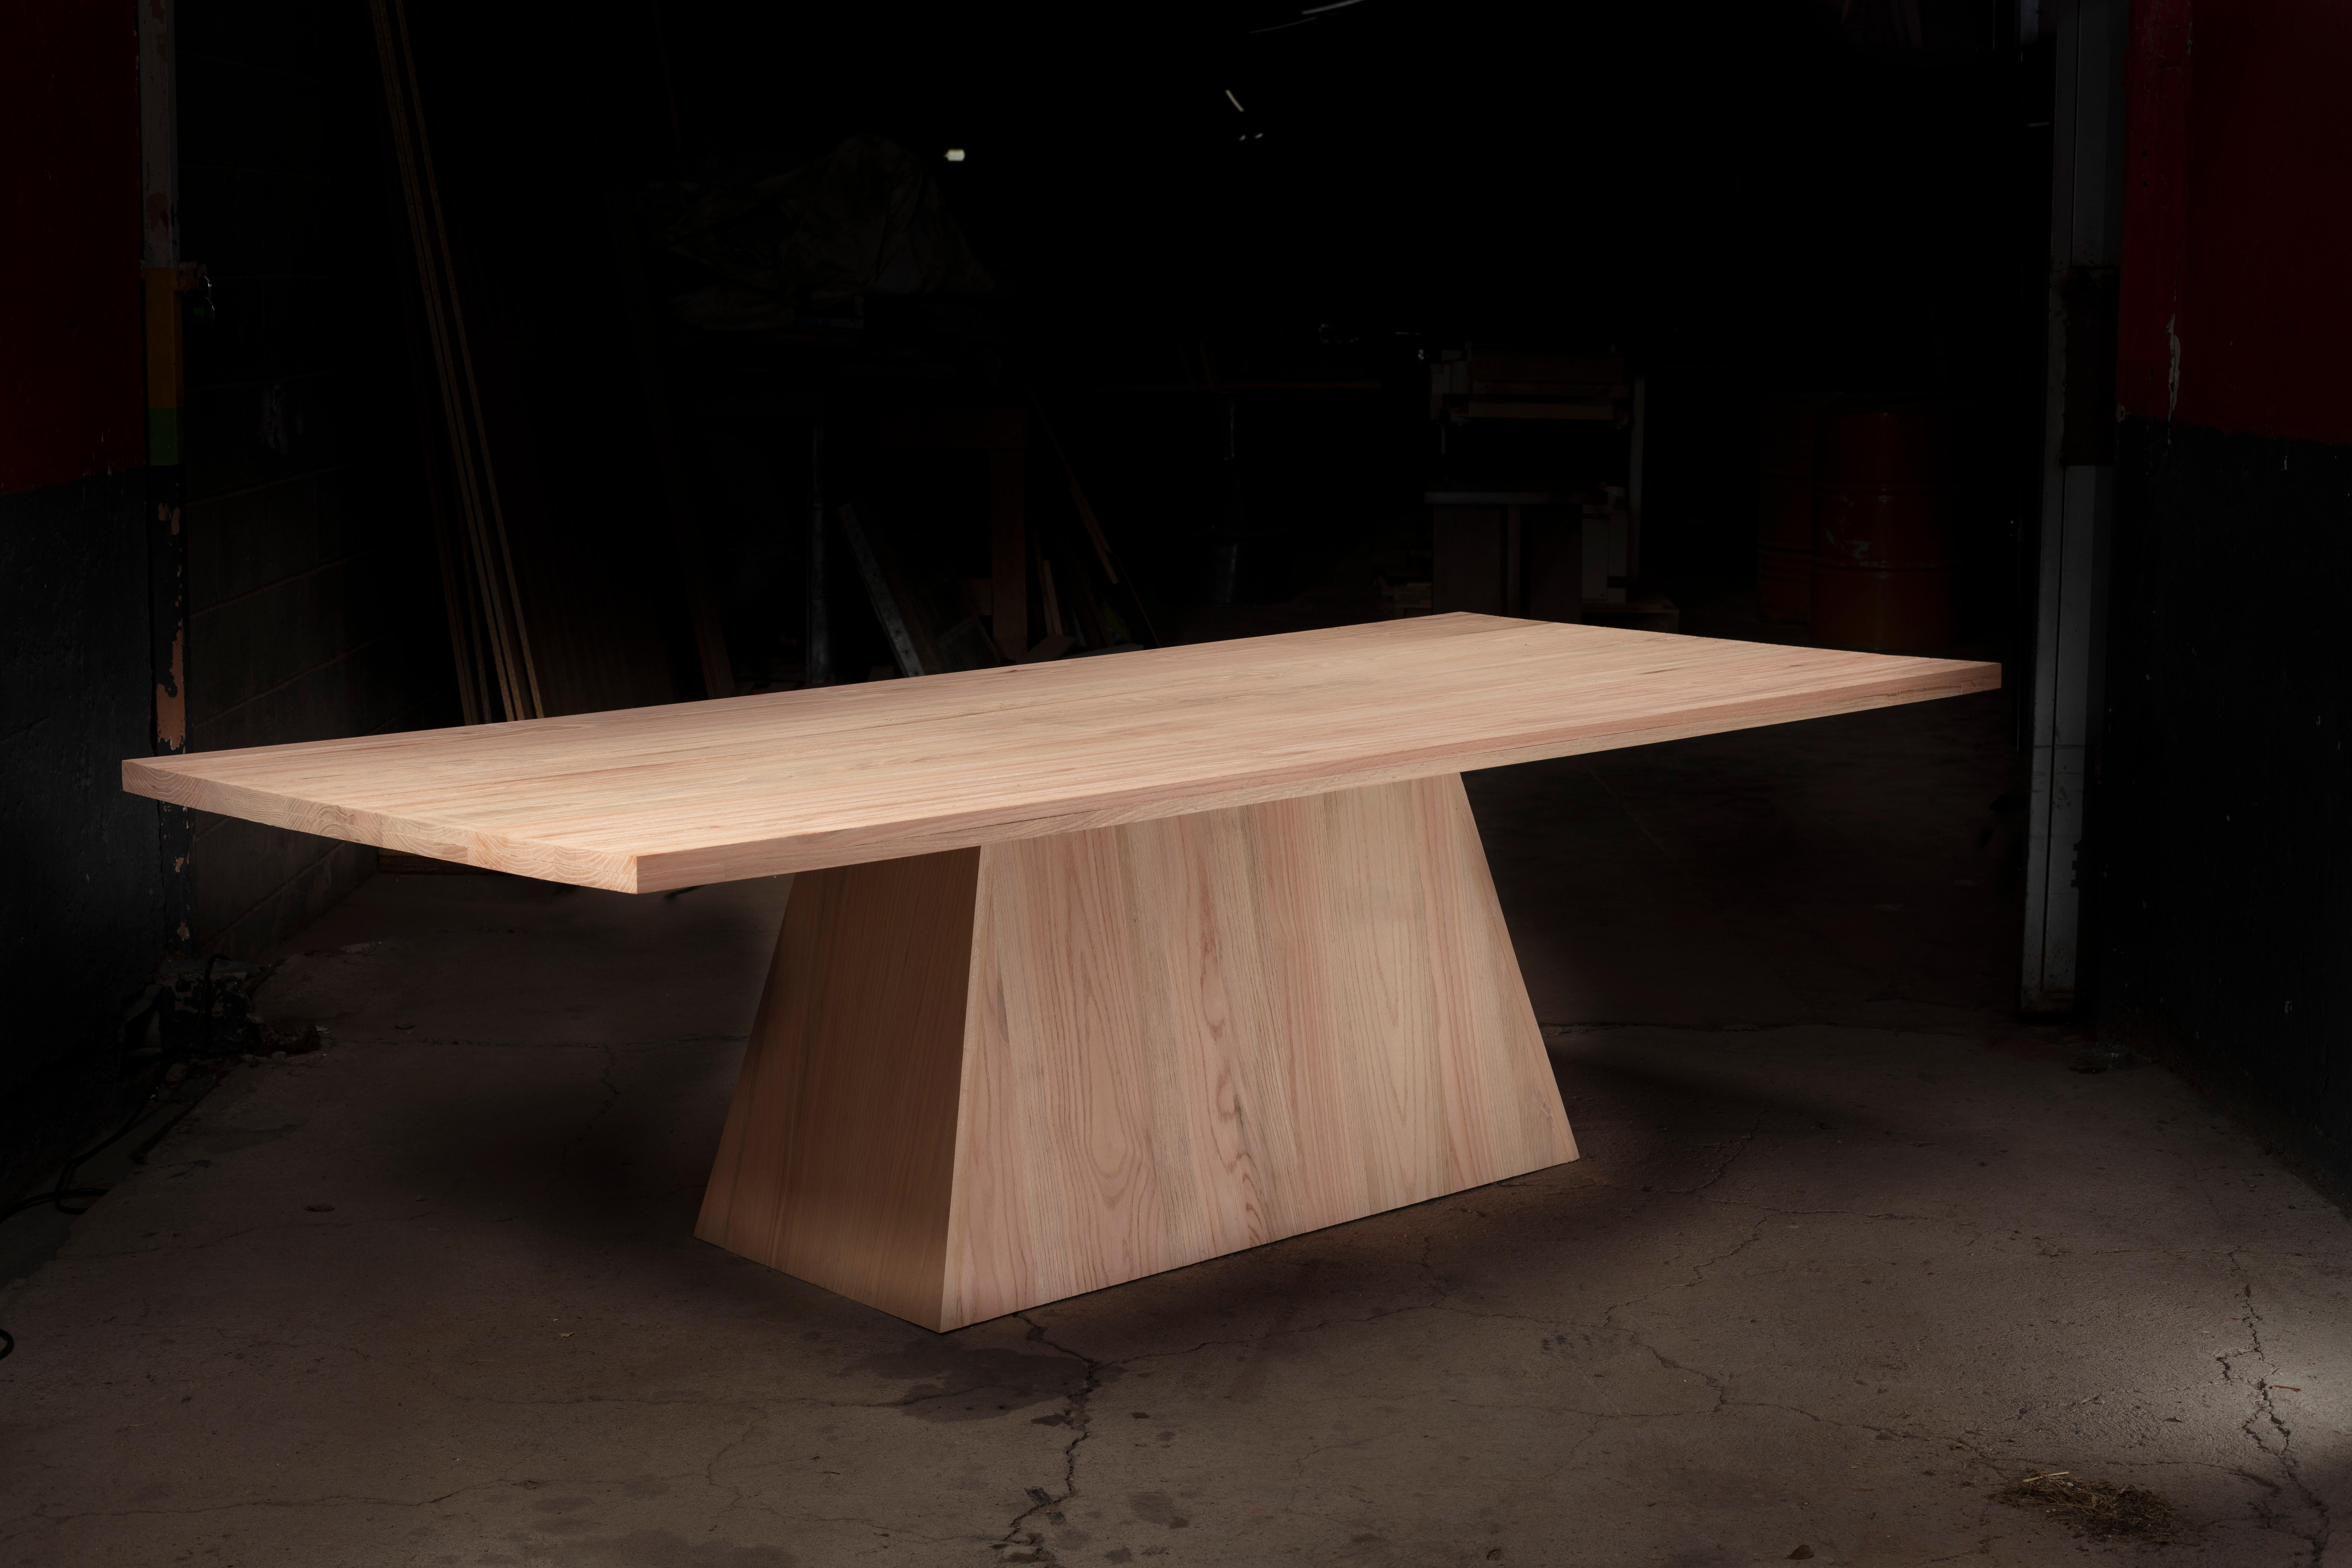 Dieser Esstisch aus massivem Eichenholz mit dreieckigem Untergestell verleiht jedem Raum, in dem er aufgestellt wird, einen modernen und einzigartigen Look. Handgefertigt von mexikanischen Kunsthandwerkern.
Inspiriert durch den Brutalismus der